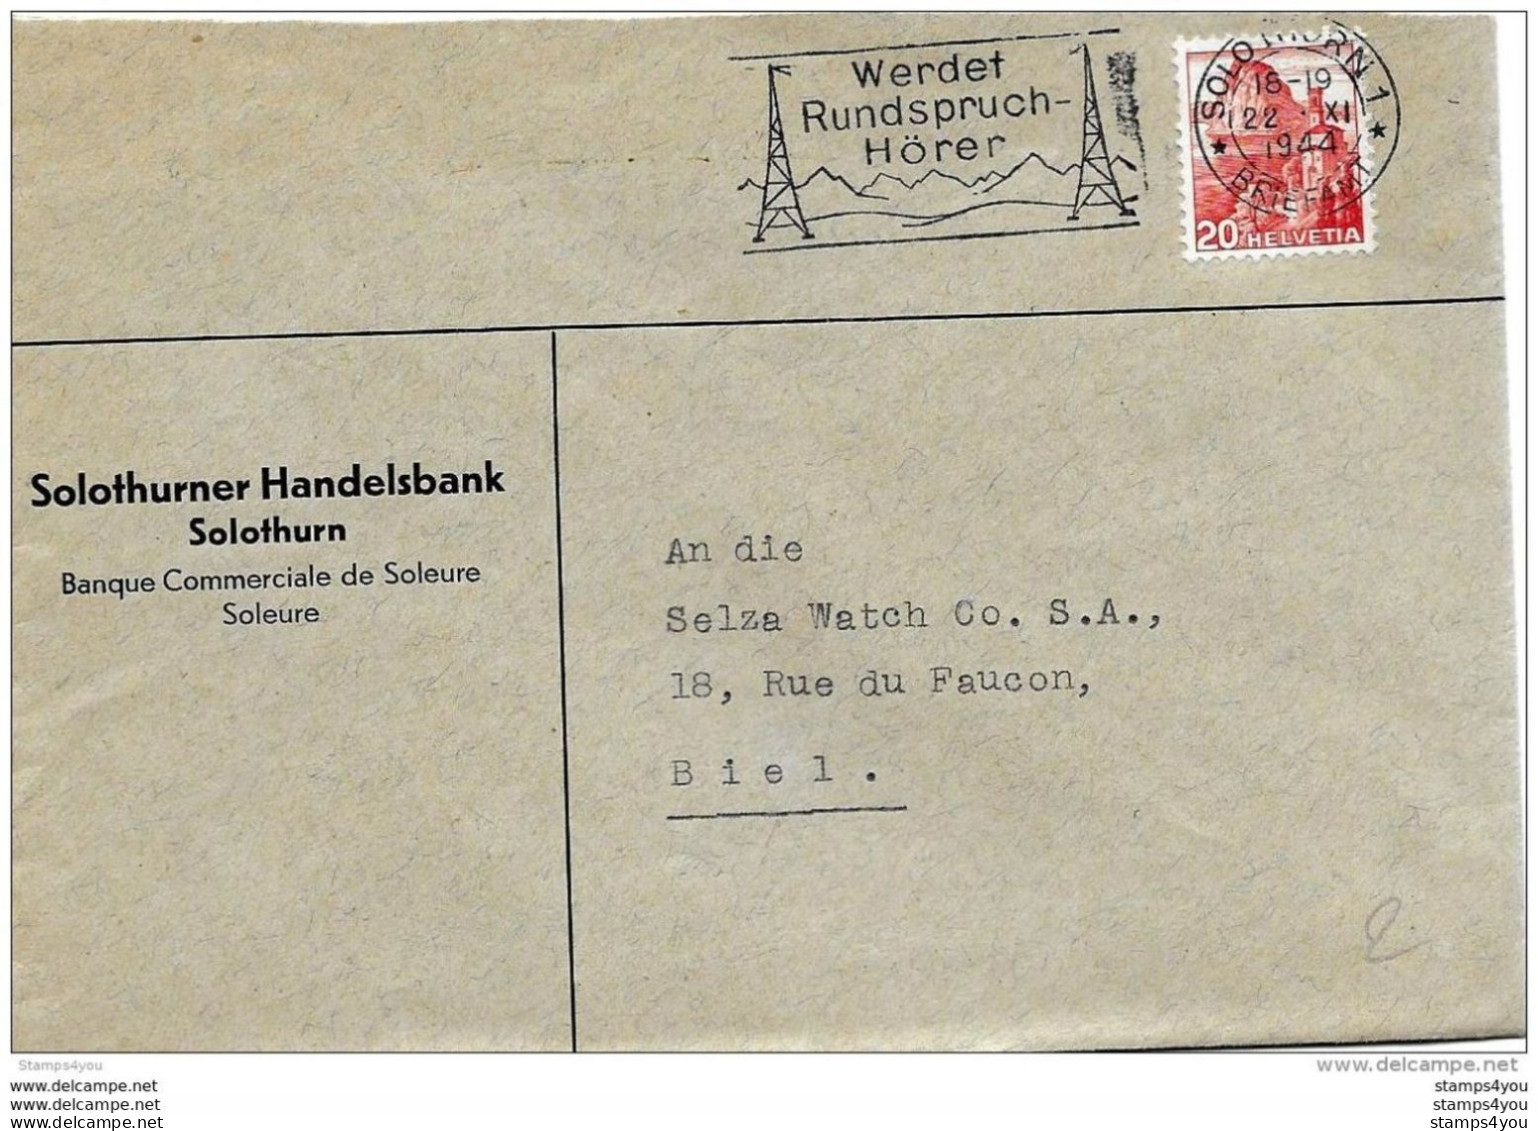 76 - 32 - Enveloppe Avec Oblit Mécanique "Werdet Rundspruch Hörer" 1944 - Marcophilie